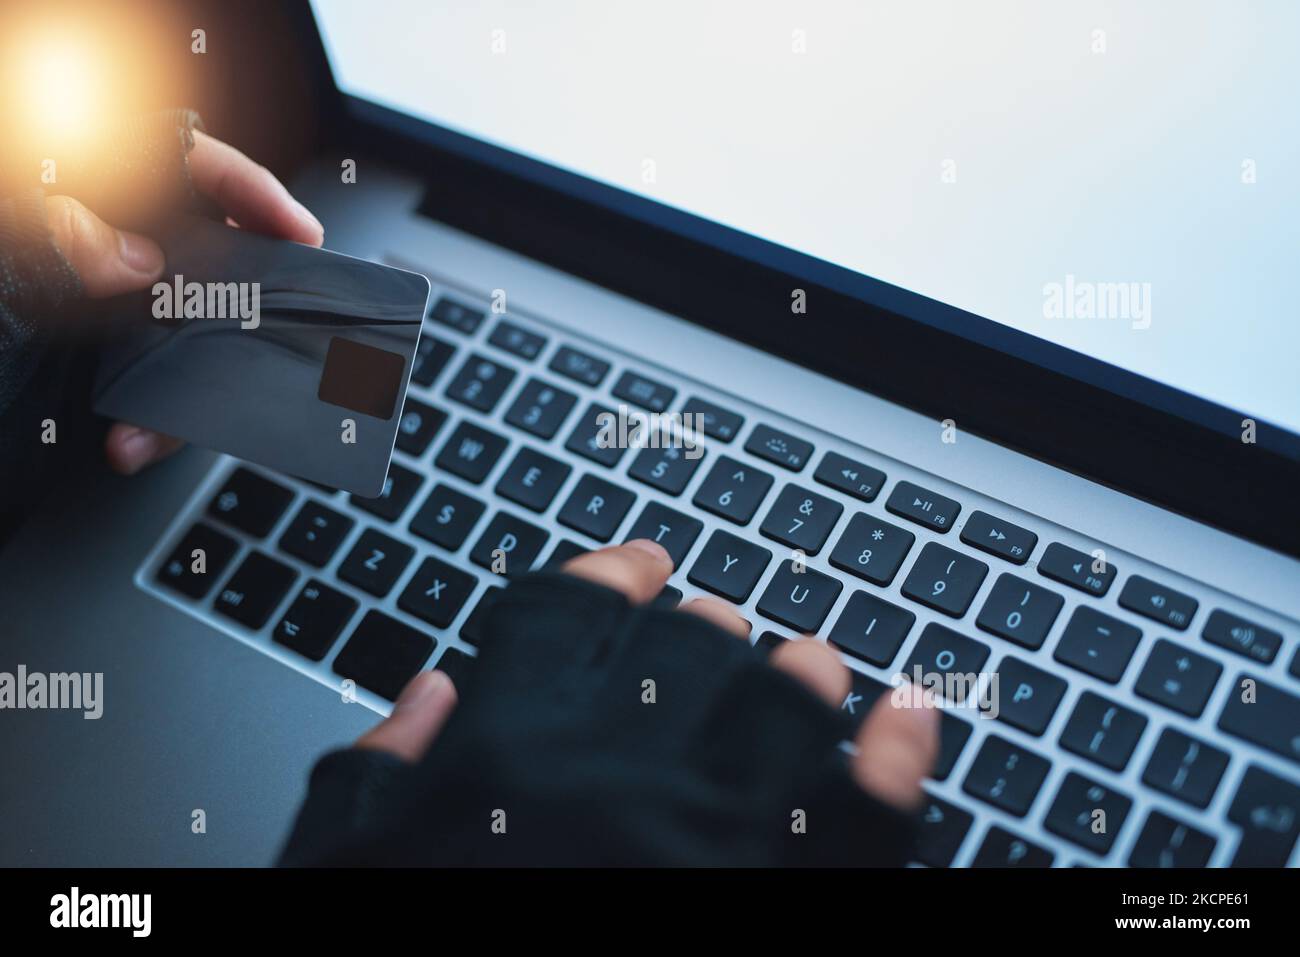 Es ist jetzt alles meine. Ein nicht erkennbarer Hacker, der einen Laptop benutzt, um in ein Kreditkonto zu hacken. Stockfoto